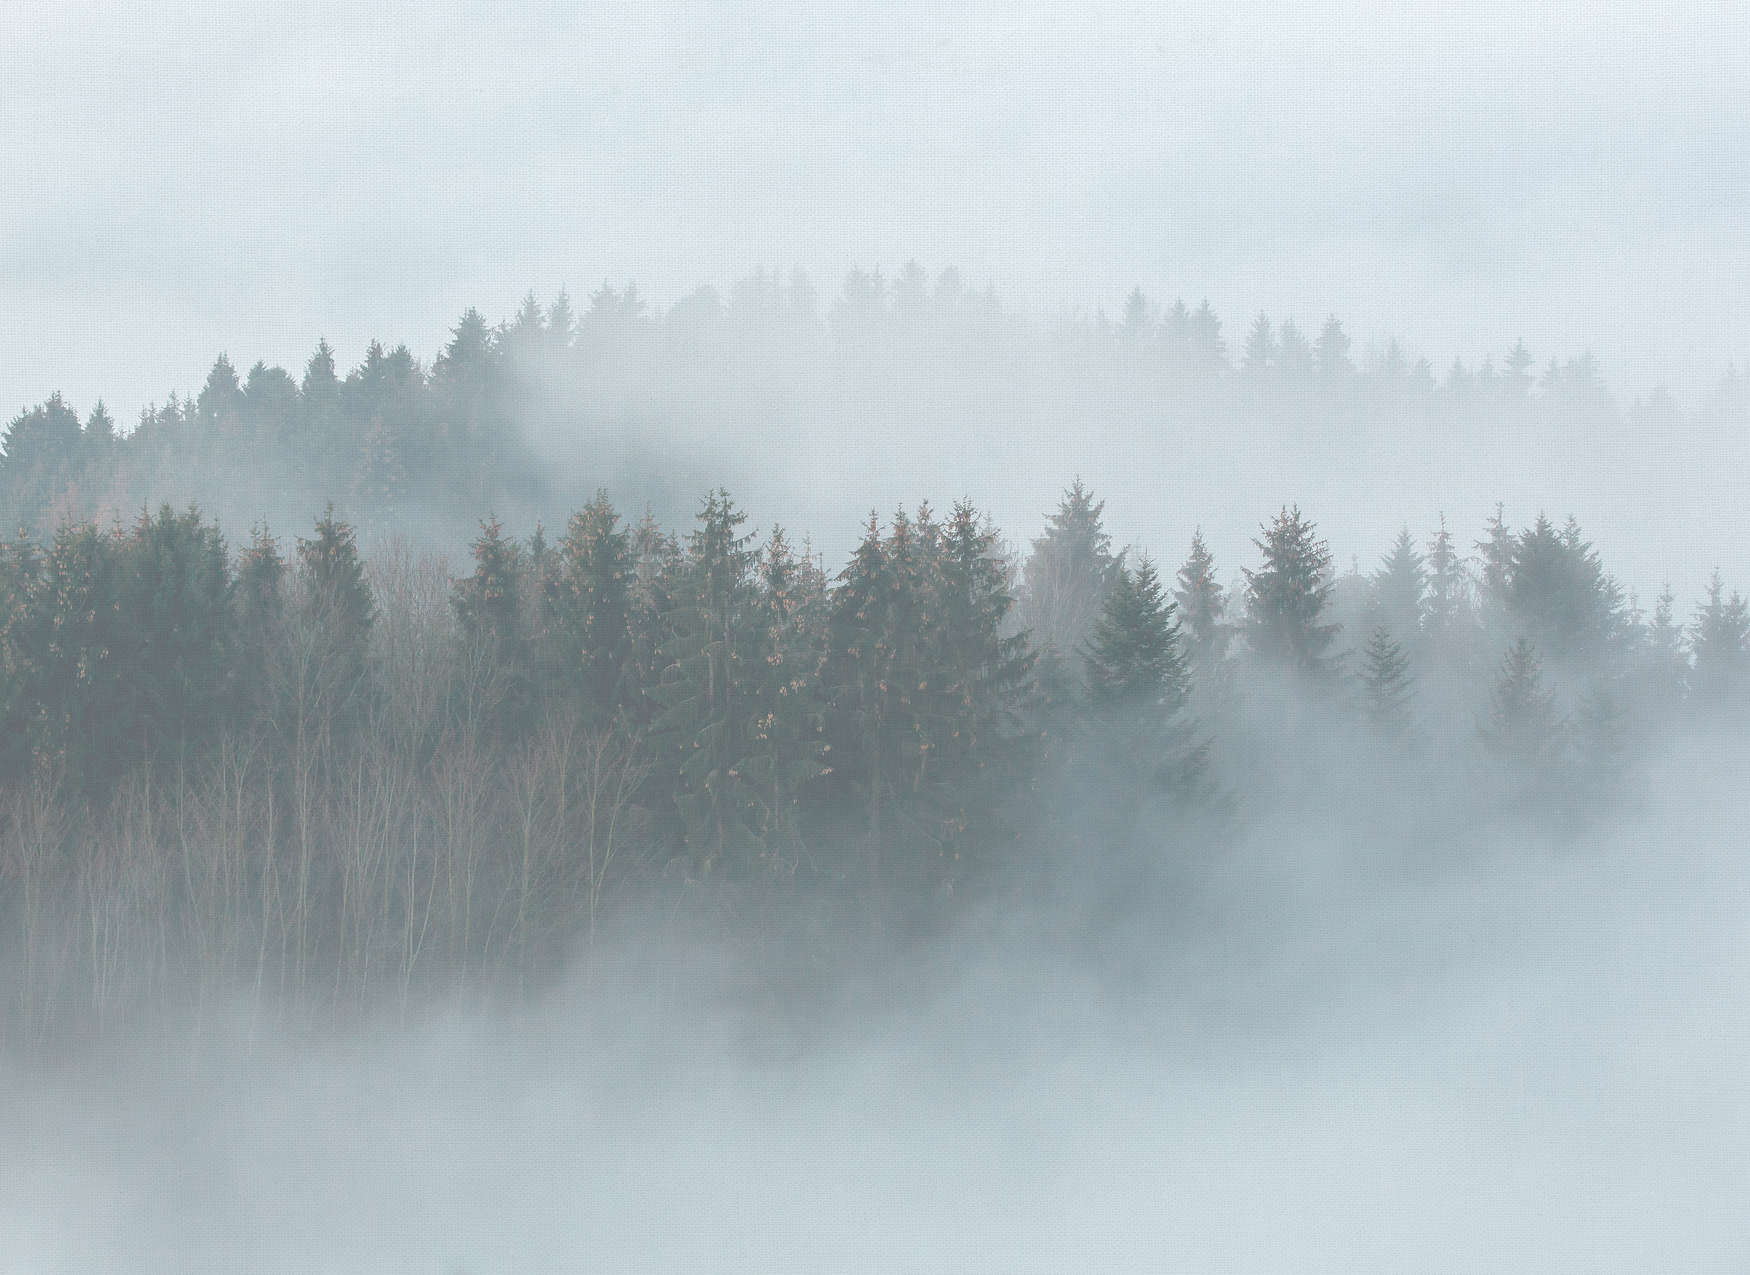             Geheimnisvoller Wald im Nebel – Weiß, Grün, Grau
        